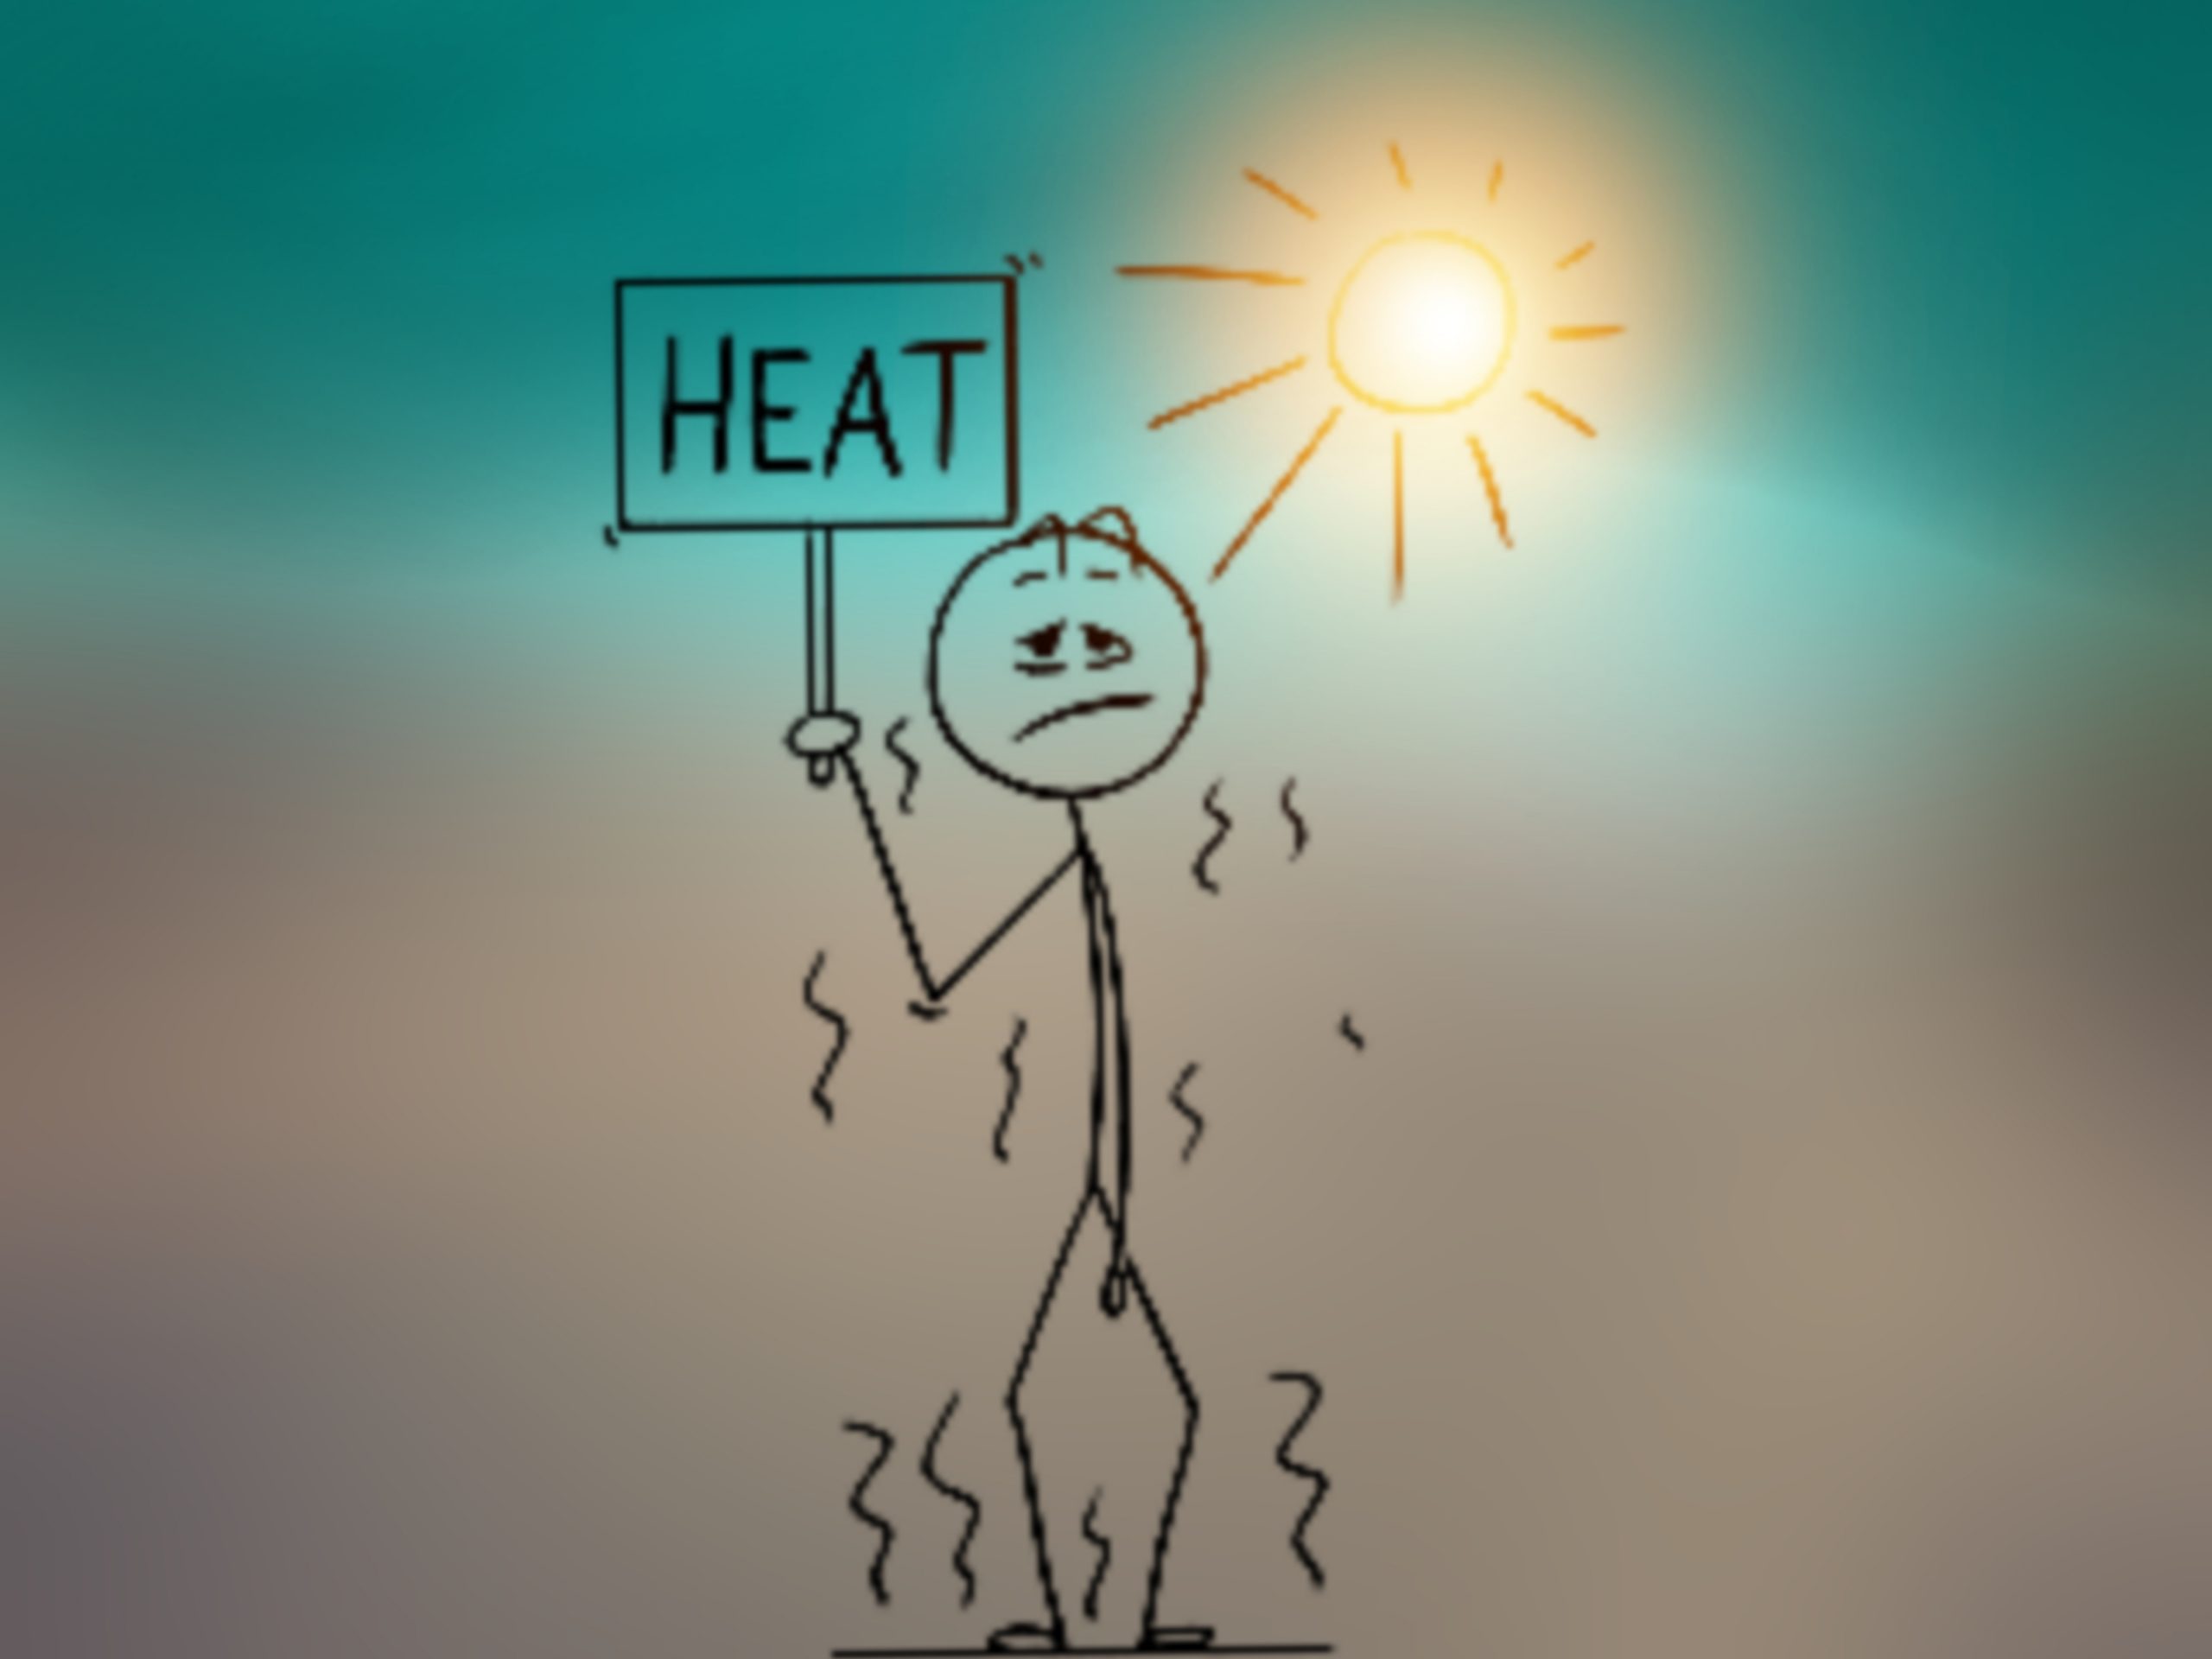 Heat on illustration